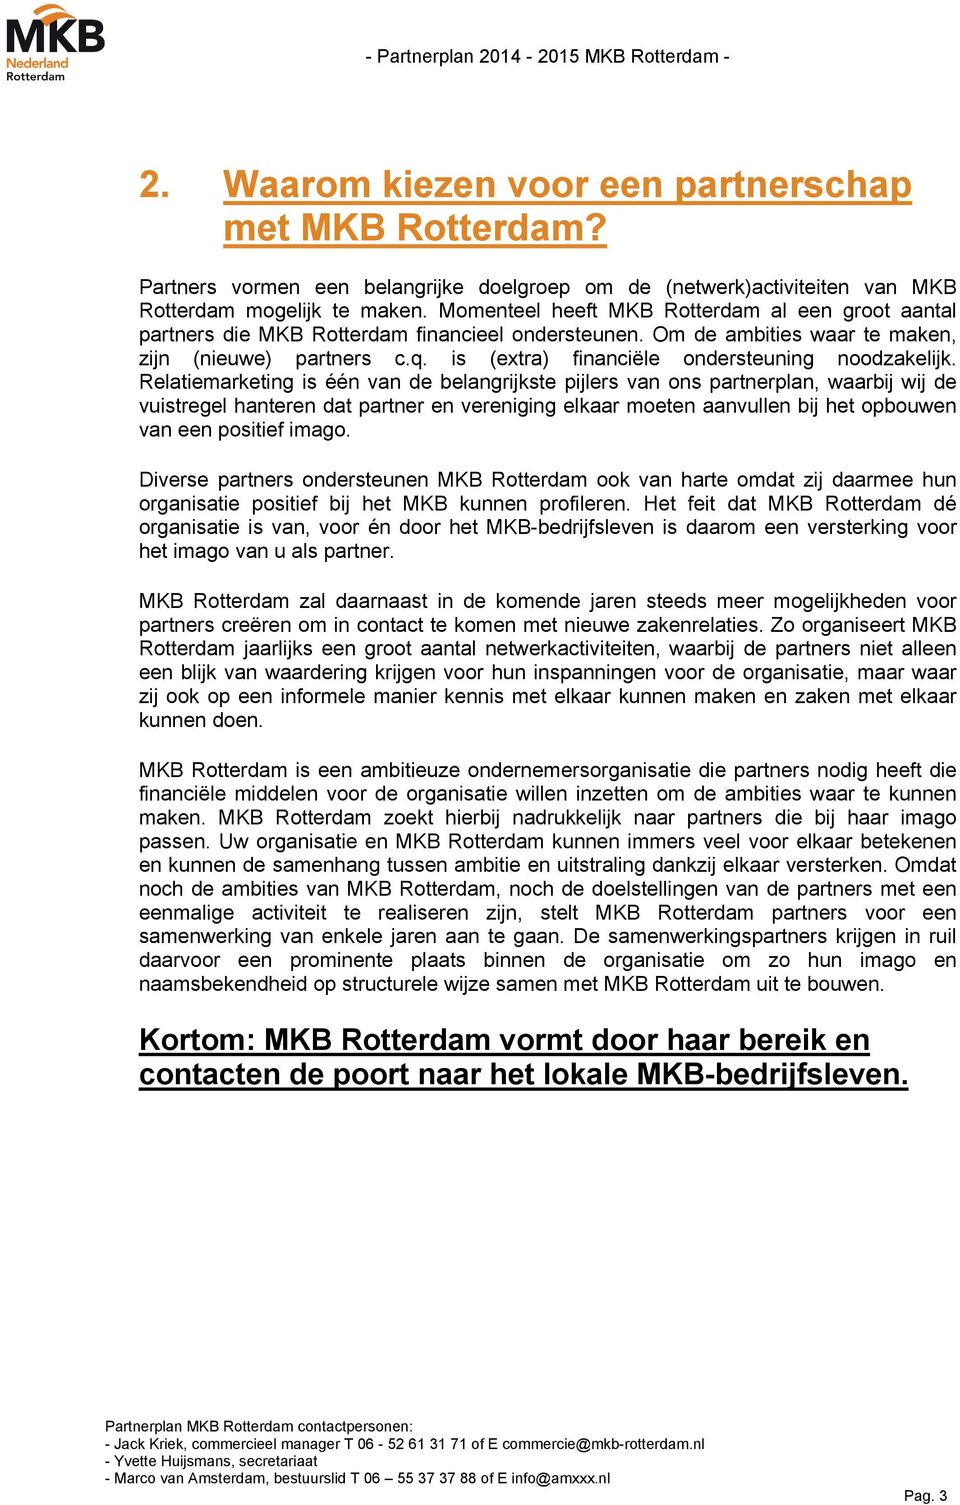 Momenteel heeft MKB Rotterdam al een groot aantal partners die MKB Rotterdam financieel ondersteunen. Om de ambities waar te maken, zijn (nieuwe) partners c.q.